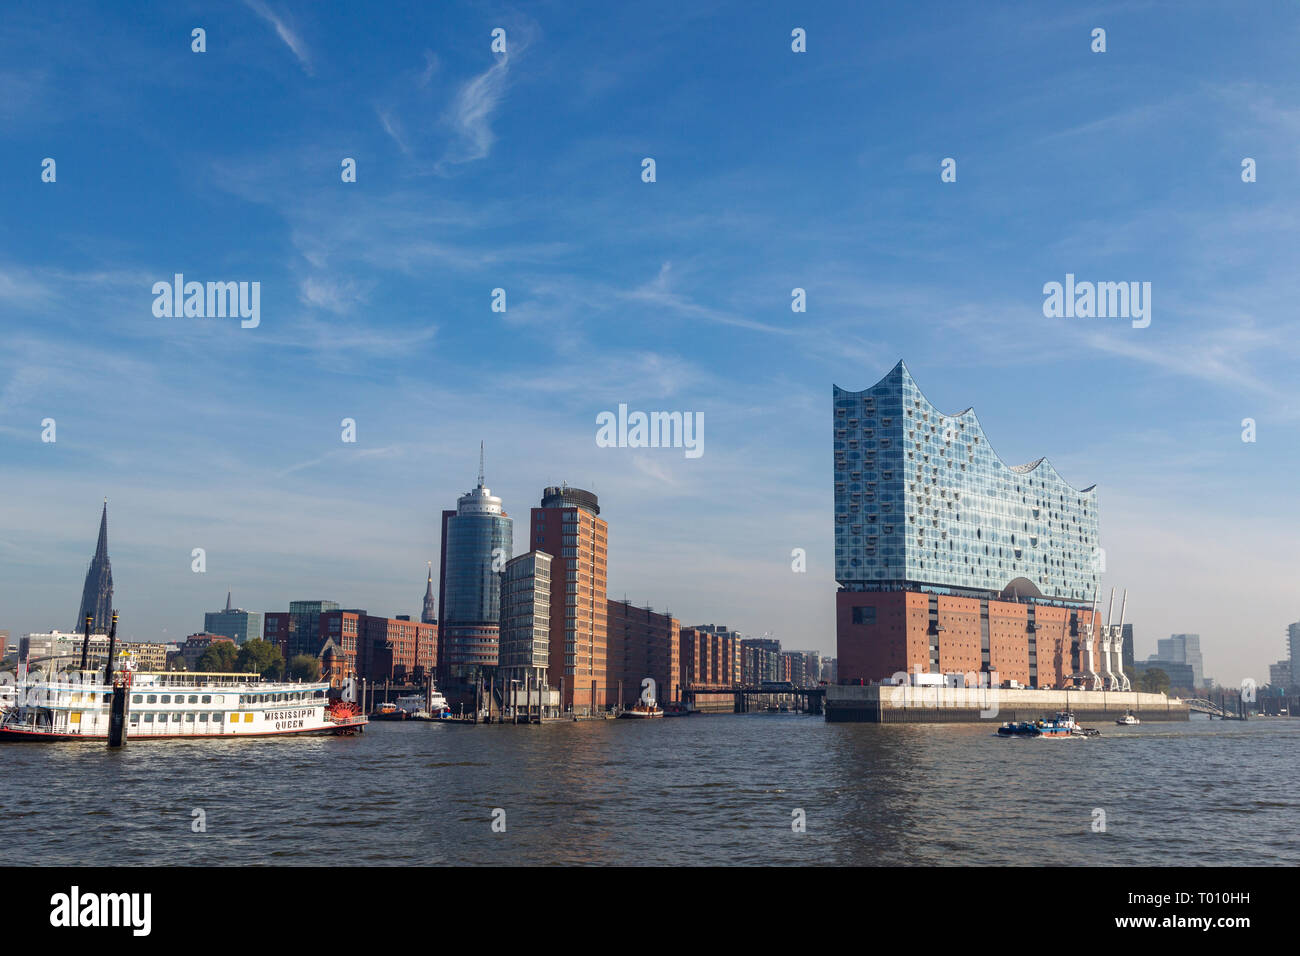 Elbphilharmonie im Hafen von Hamburg, Deutschland. Stockfoto